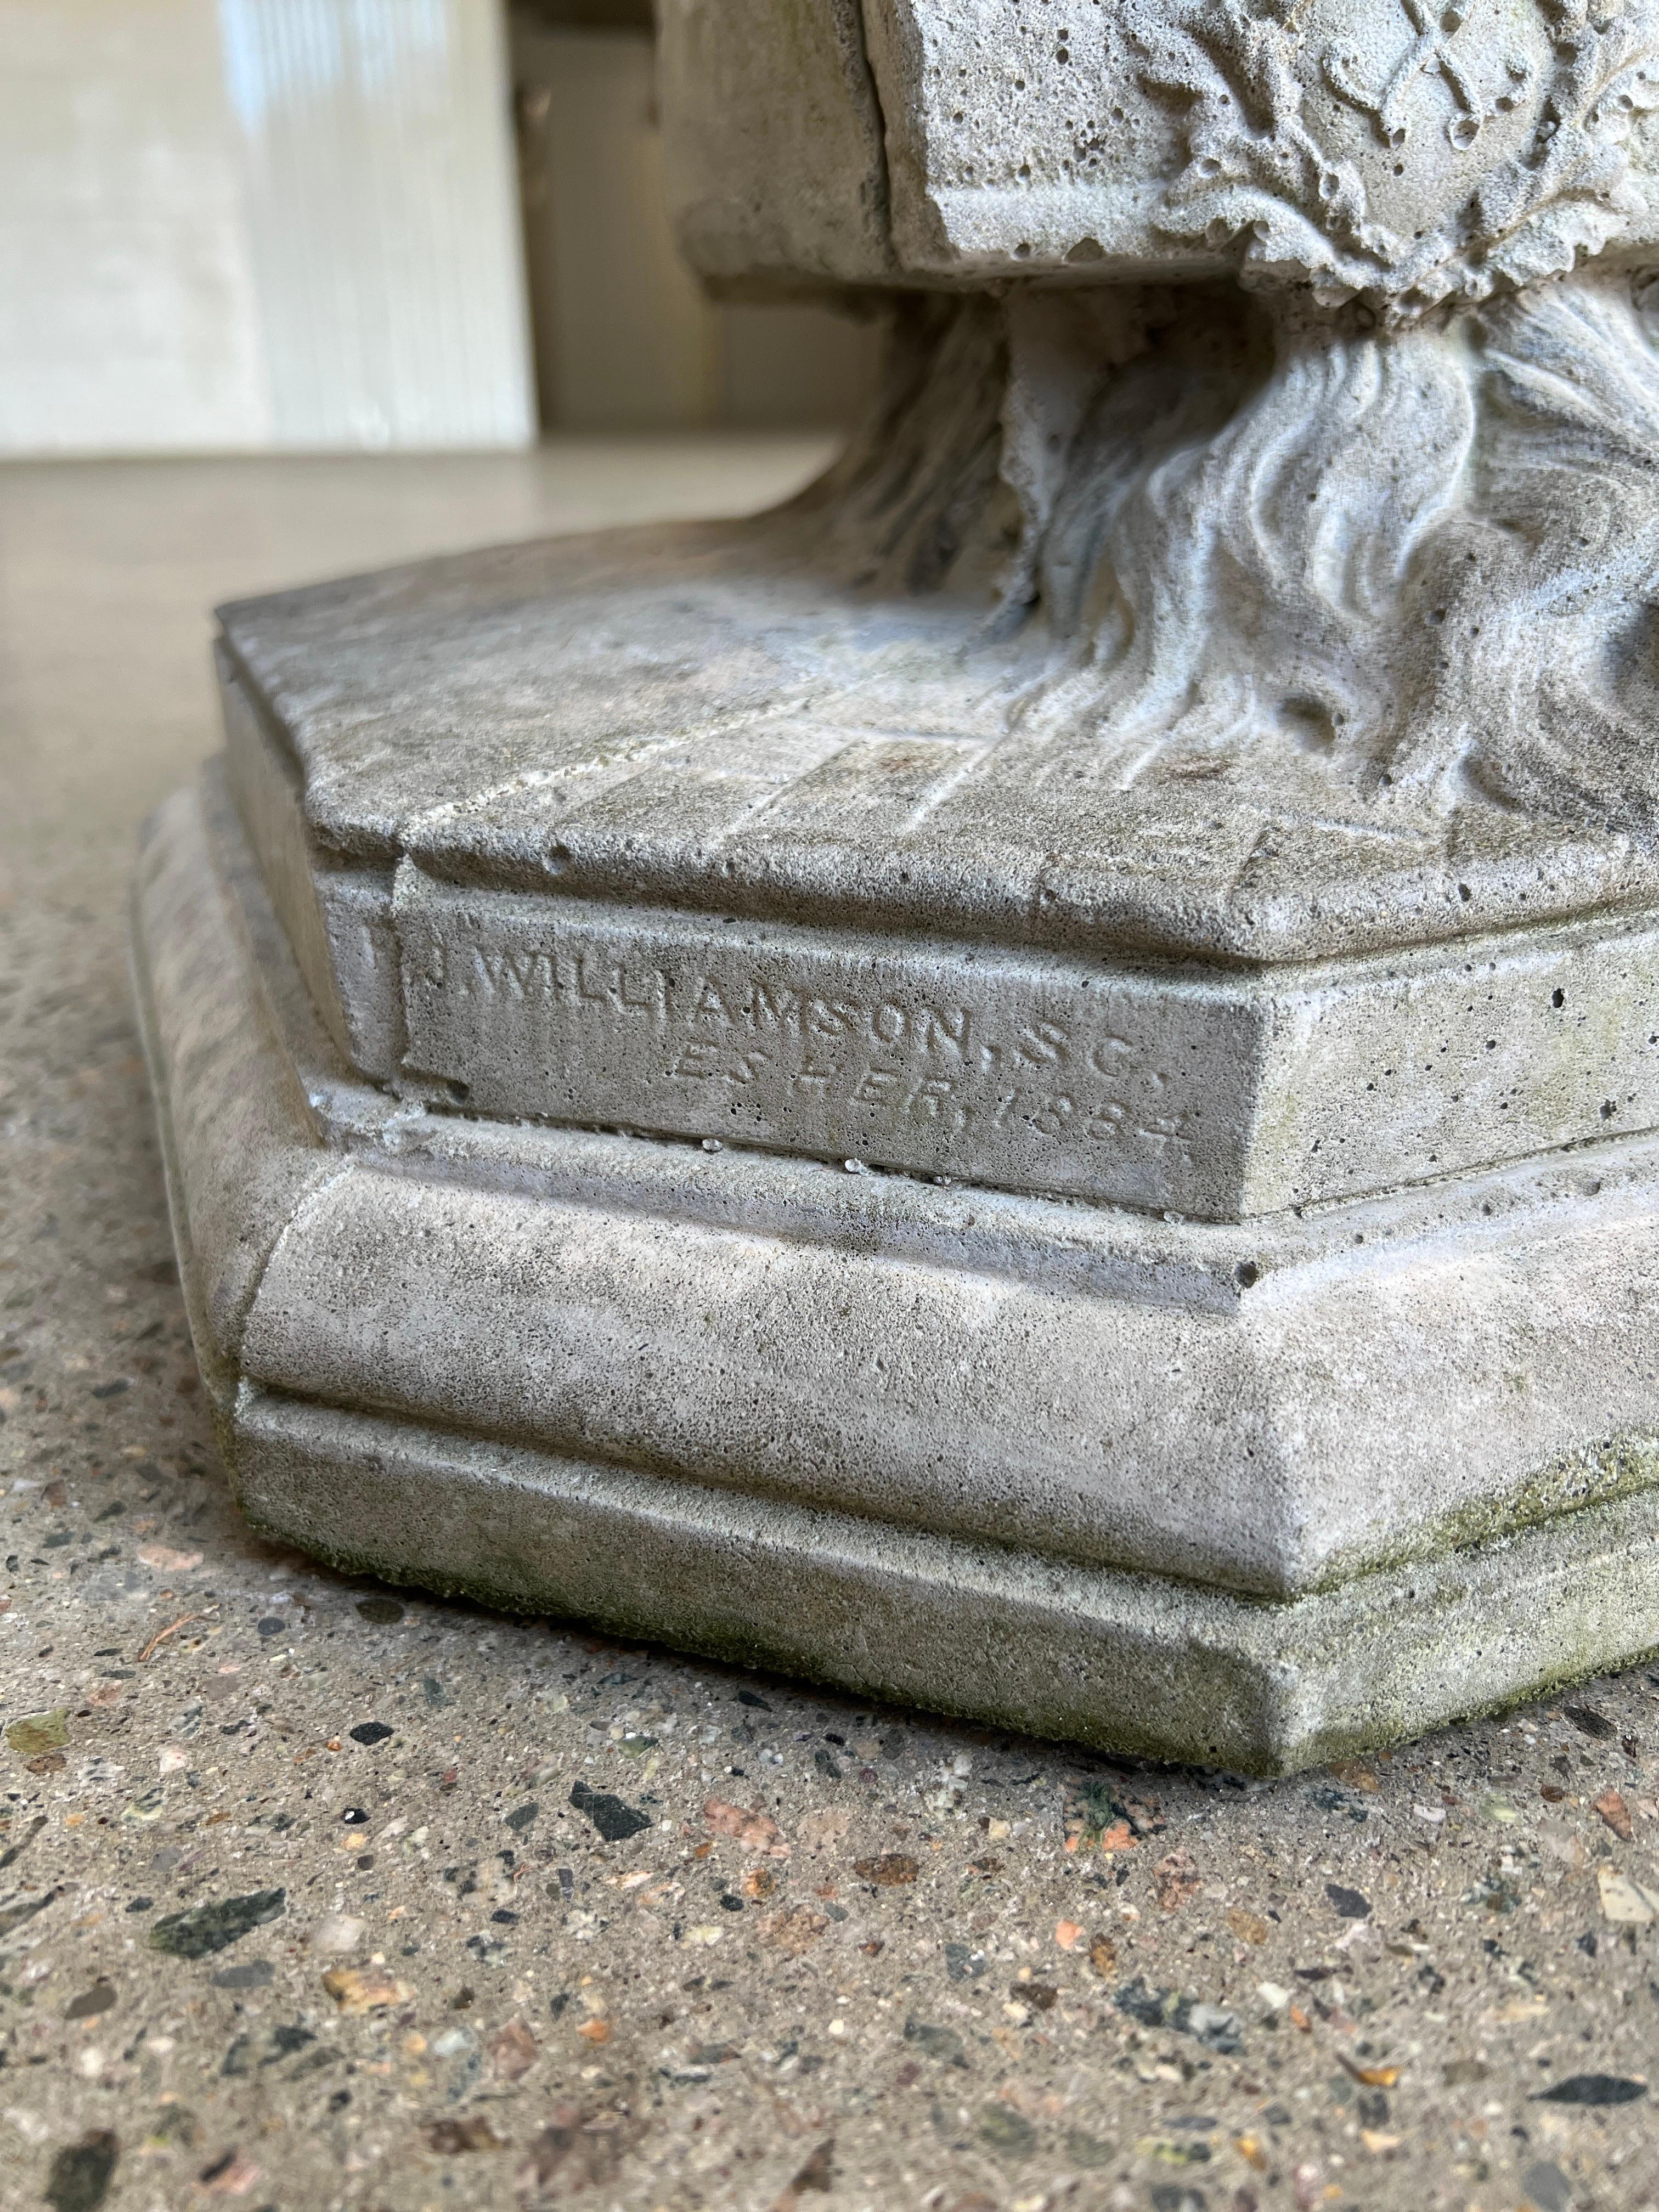 Francis John Williamson (Brite, 1833-1920), um 1884. 

Eine beeindruckende Steingussskulptur des bekannten britischen Porträtbildhauers Francis John Williamson. Diese fein gegossene und geformte Figur stellt das königliche Familienbaby Prinzessin